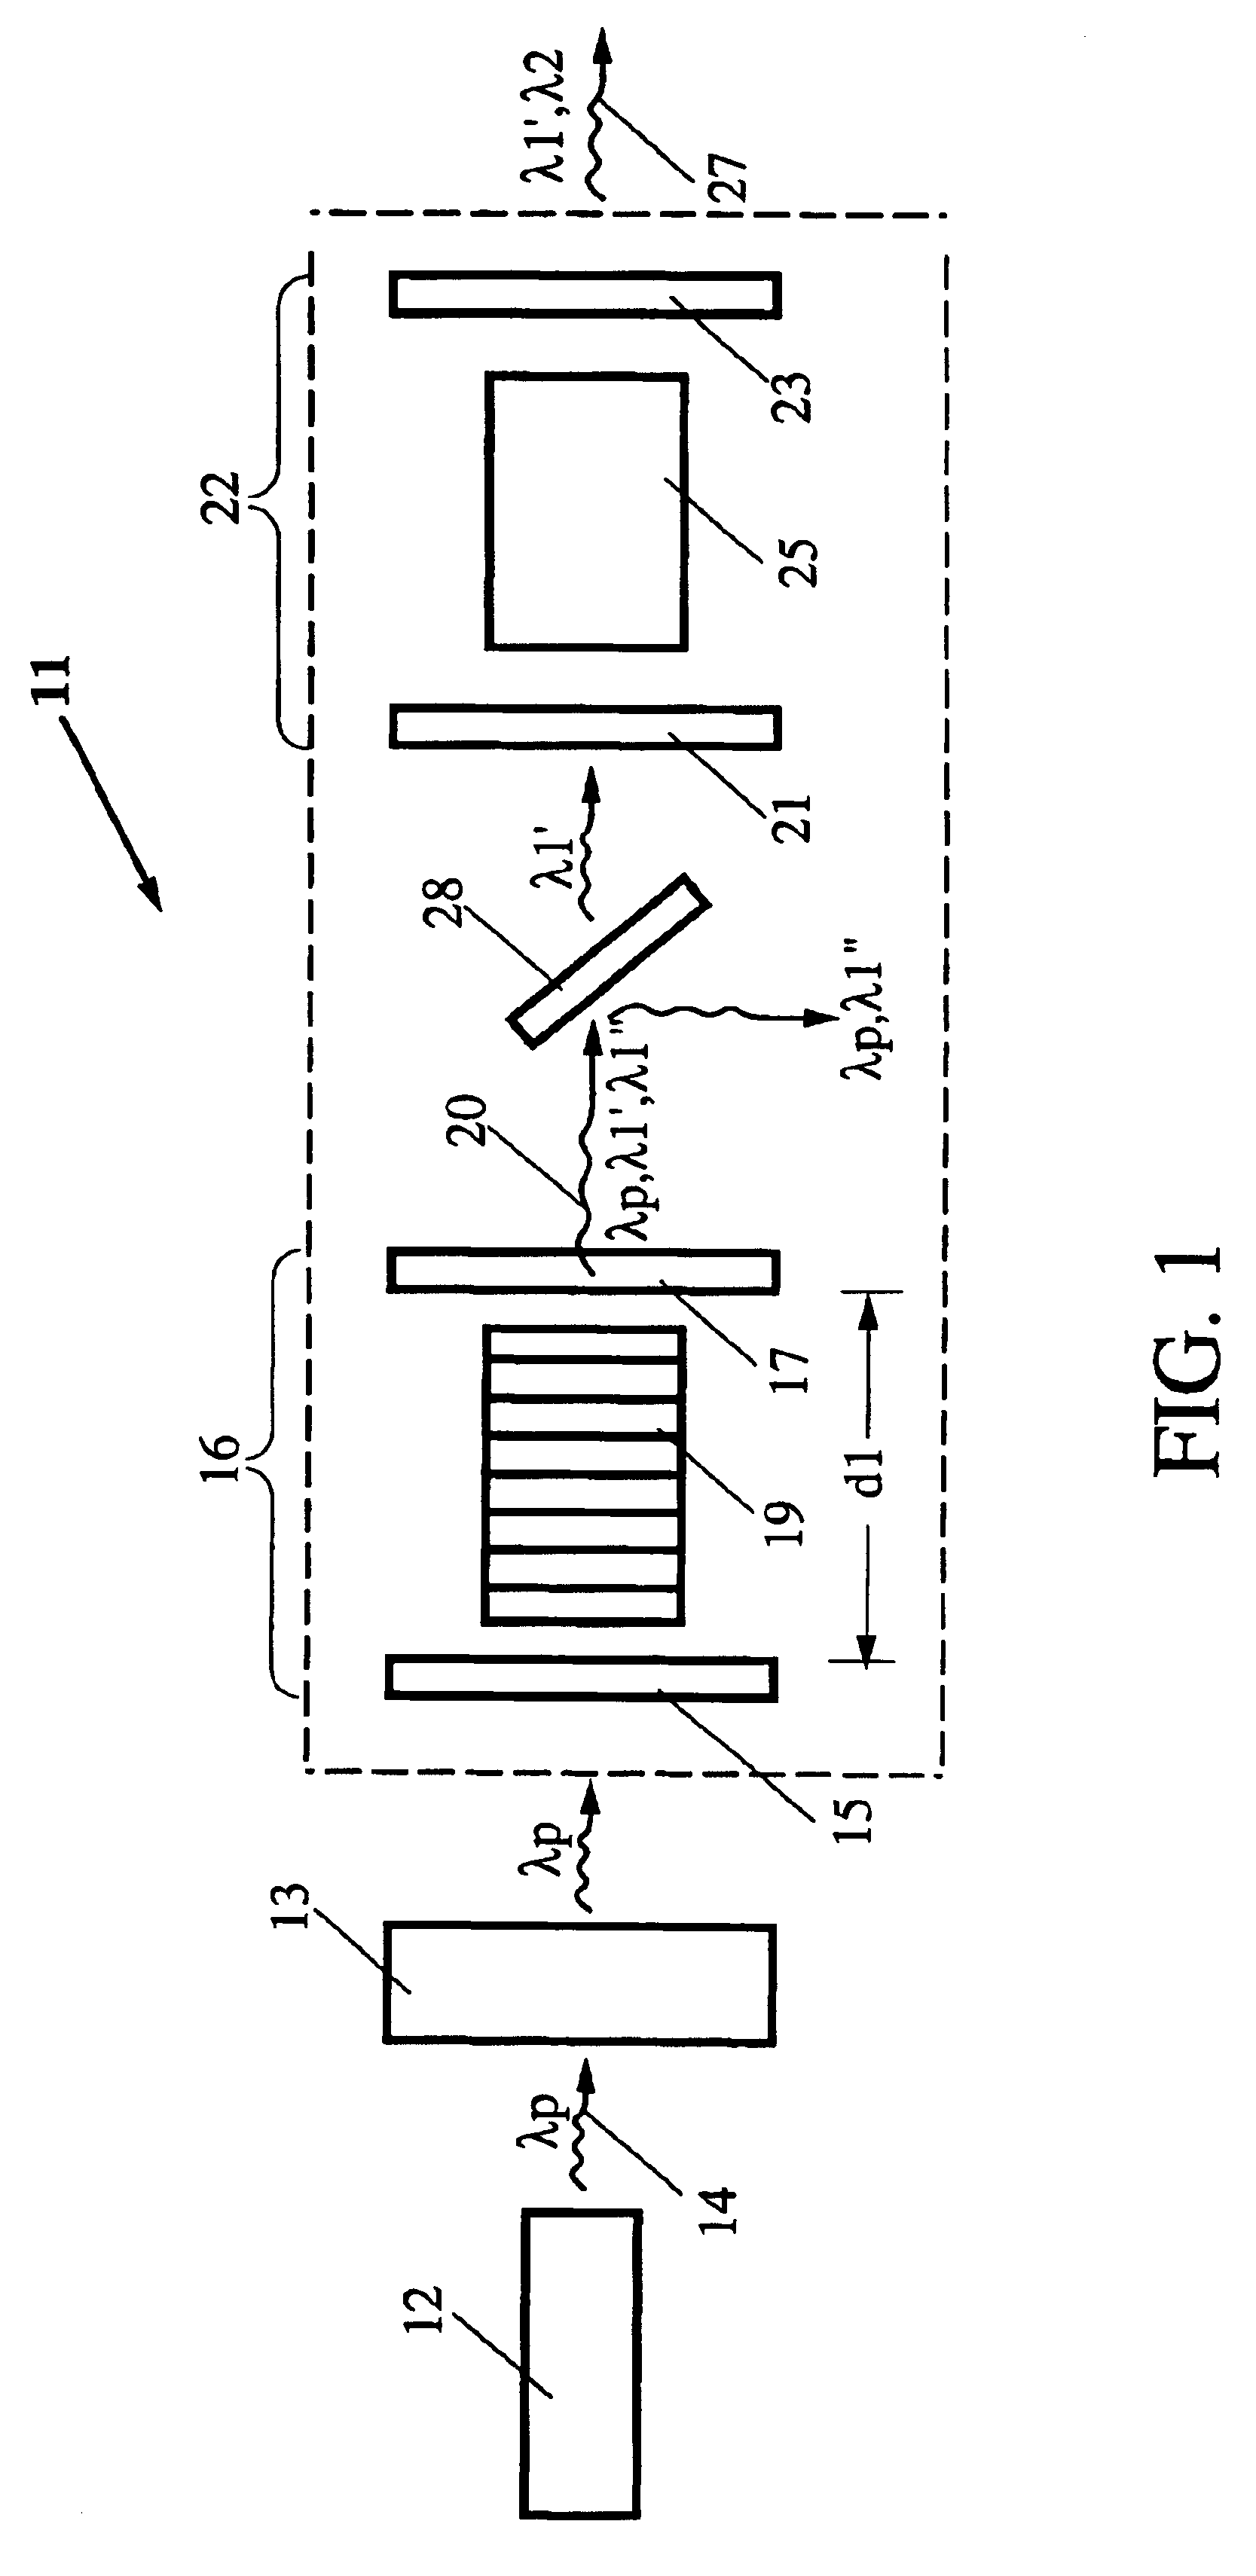 Cascaded noncritical optical parametric oscillator